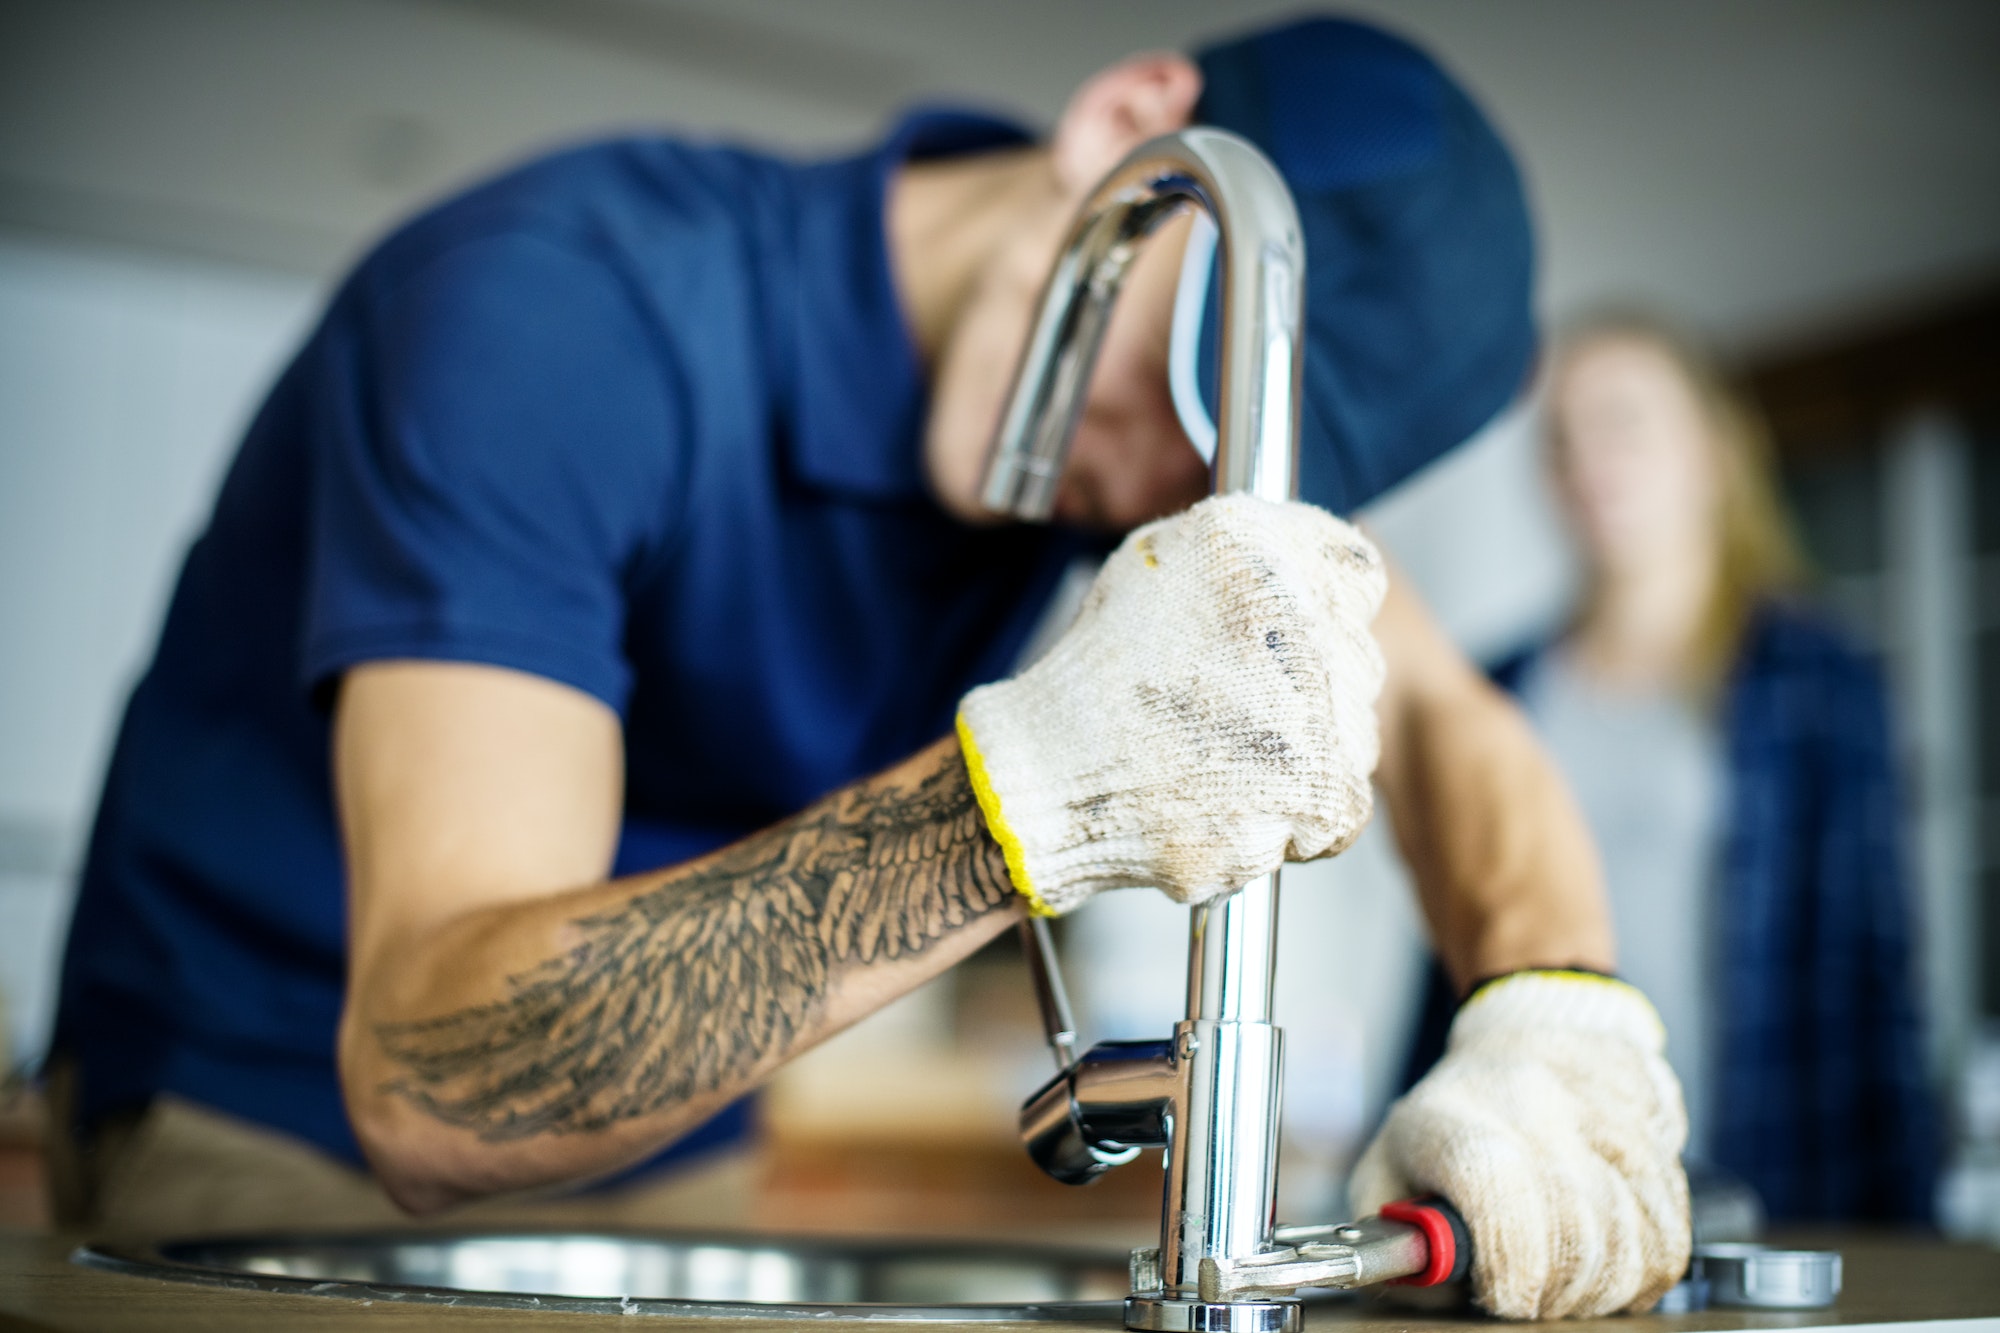 plumber-fixing-kitchen-sink.jpg